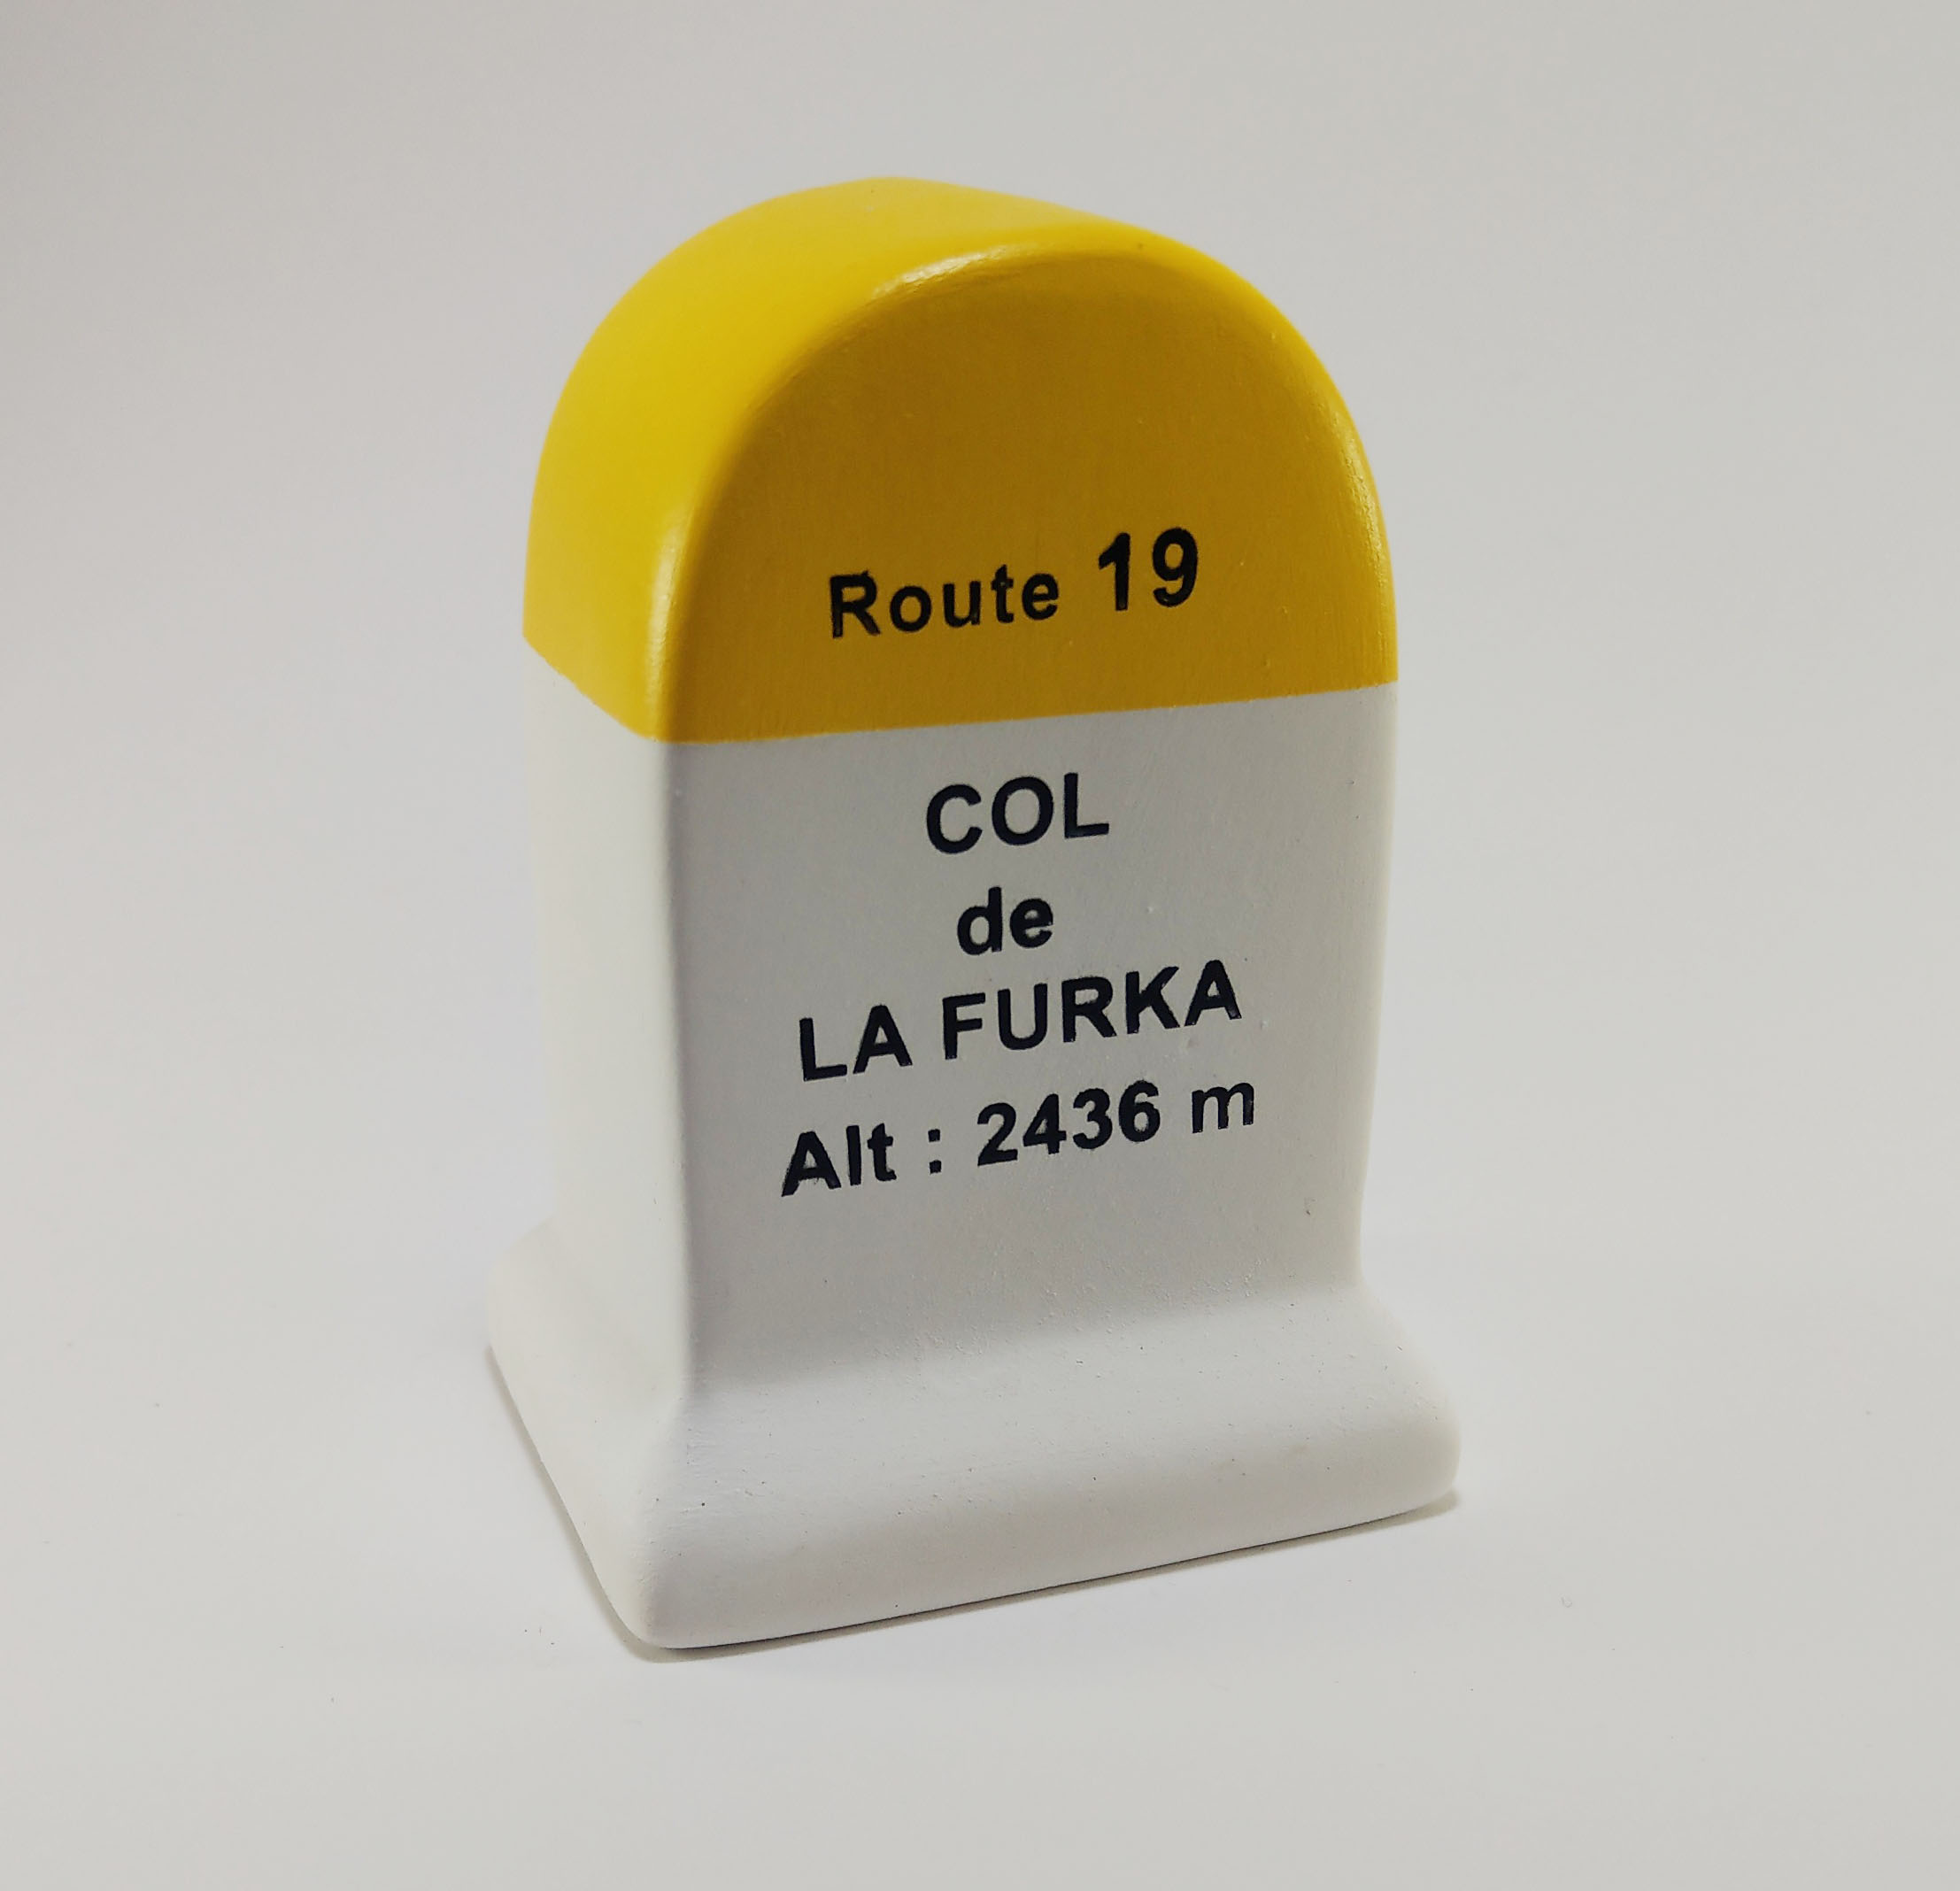 Furka Road Marker Model